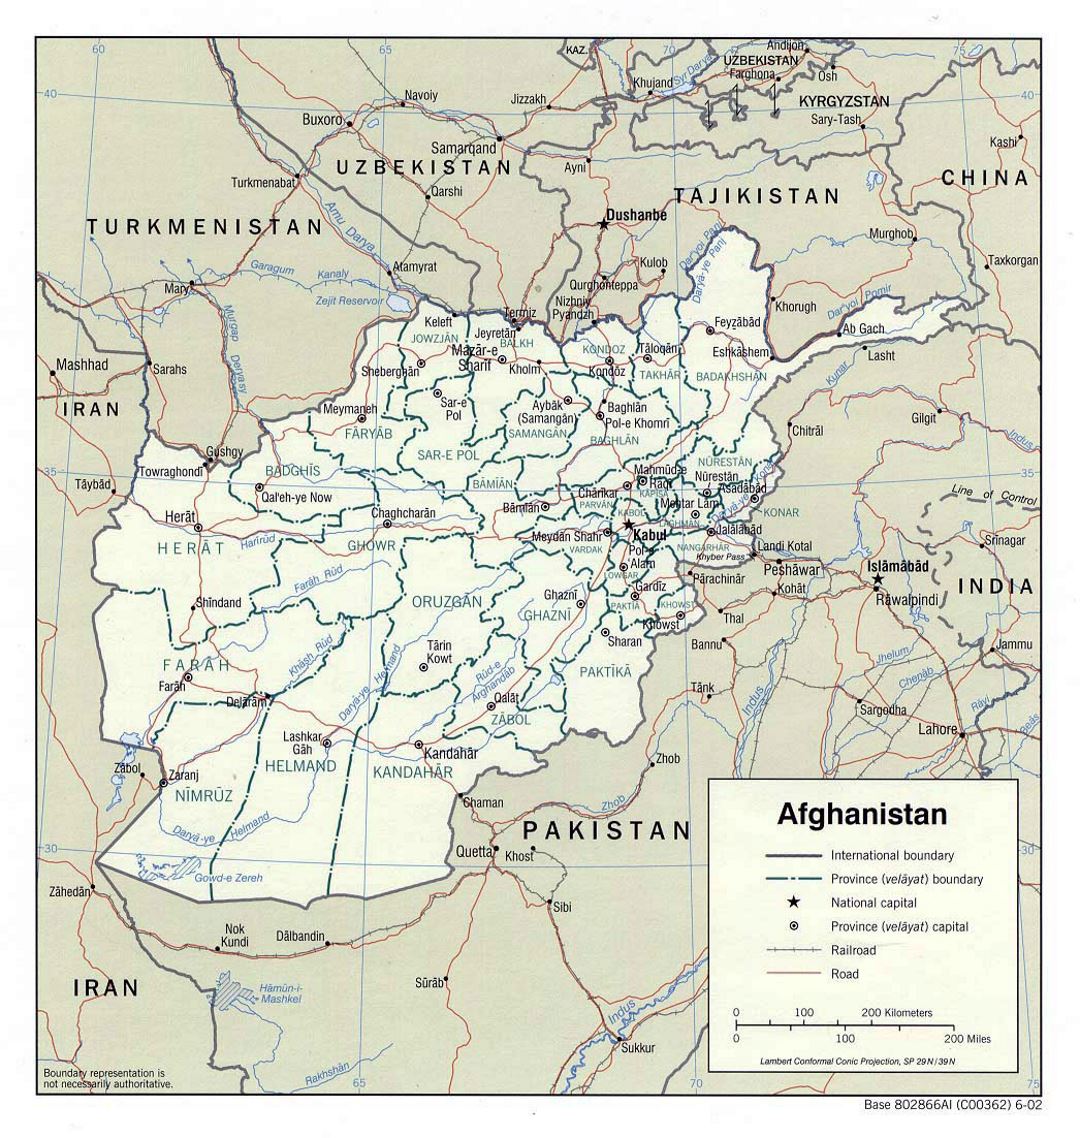 Detallado mapa político y administrativo de Afganistán - 2002